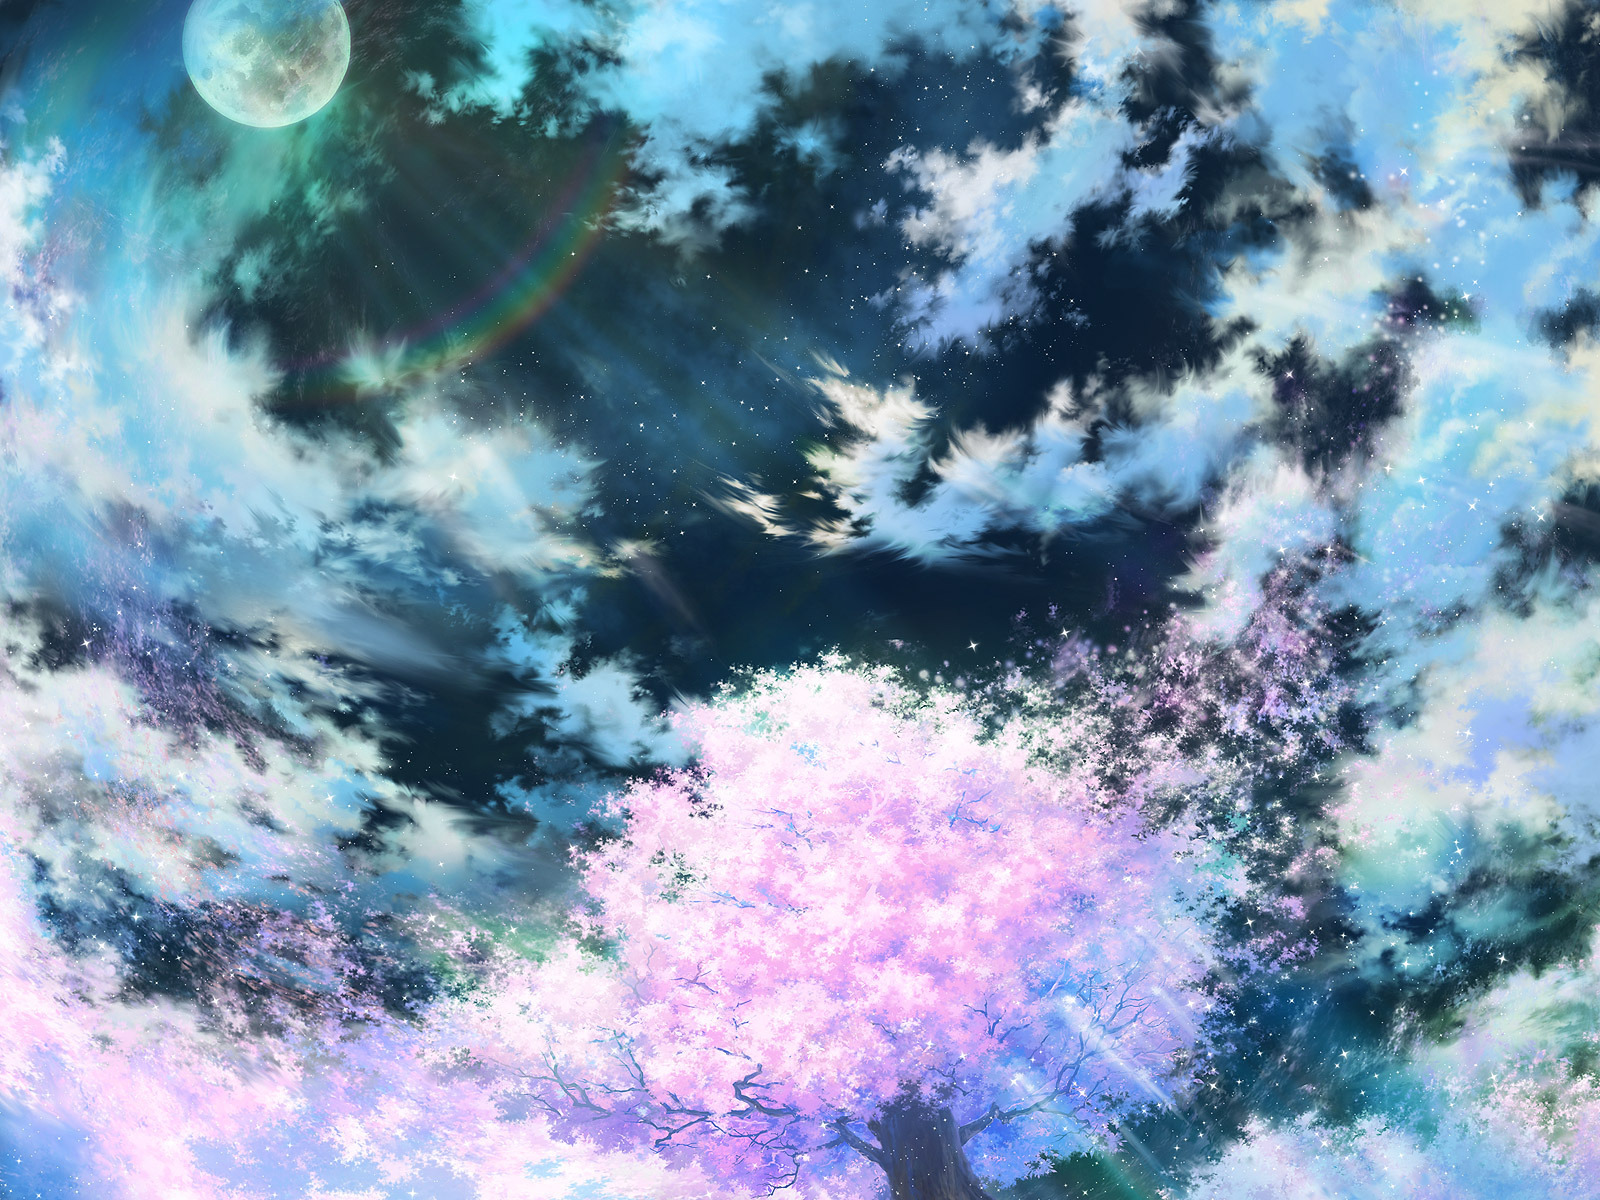 HD wallpaper: Anime, Original, Fantasy, Sakura Blossom, Shooting Star |  Wallpaper Flare